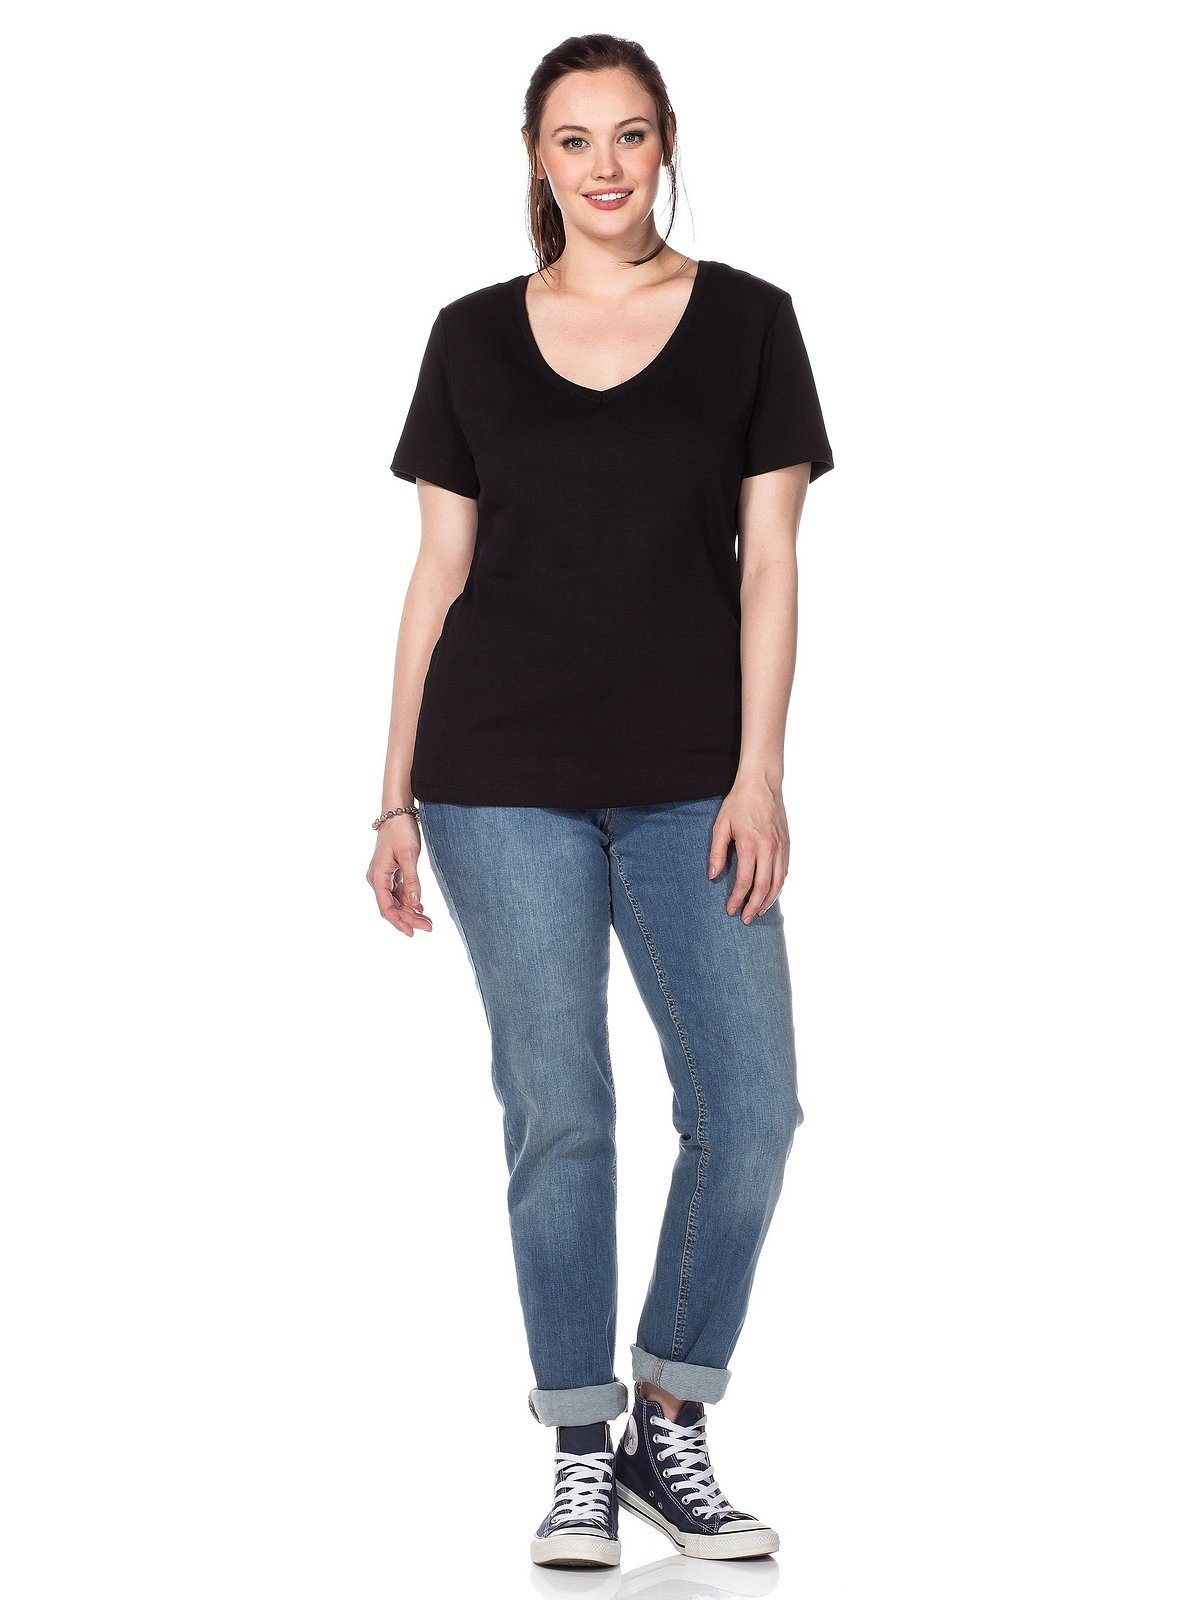 Große Sheego Qualität aus fein Größen T-Shirt schwarz gerippter